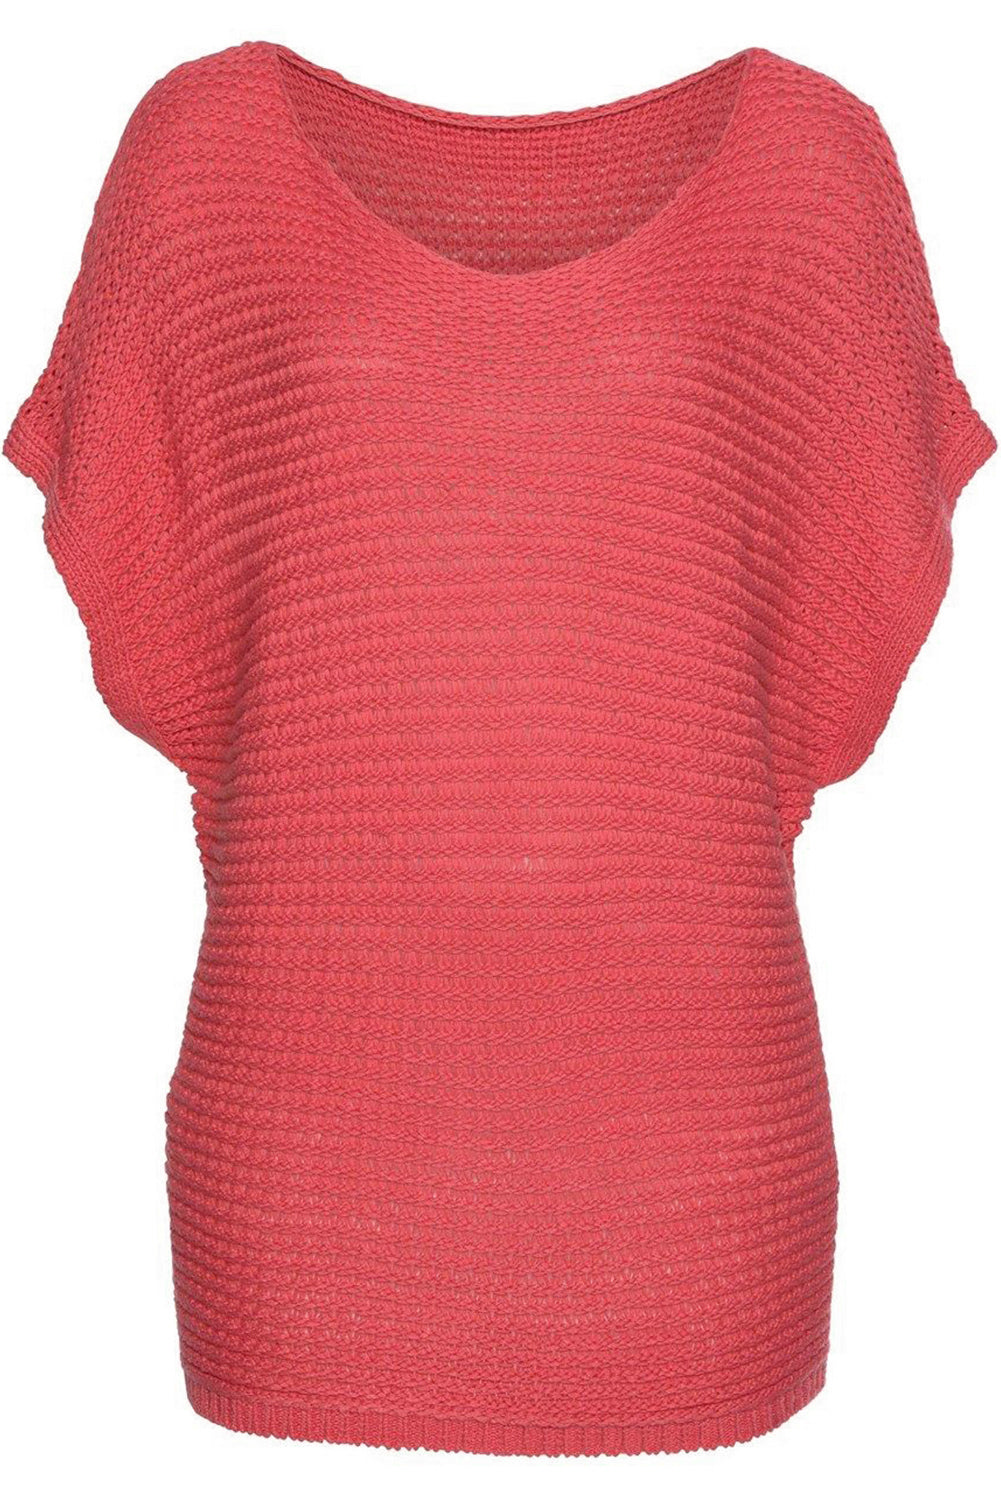 Jednobojni široki pleteni džemper kratkih dolman rukava boje đumbira